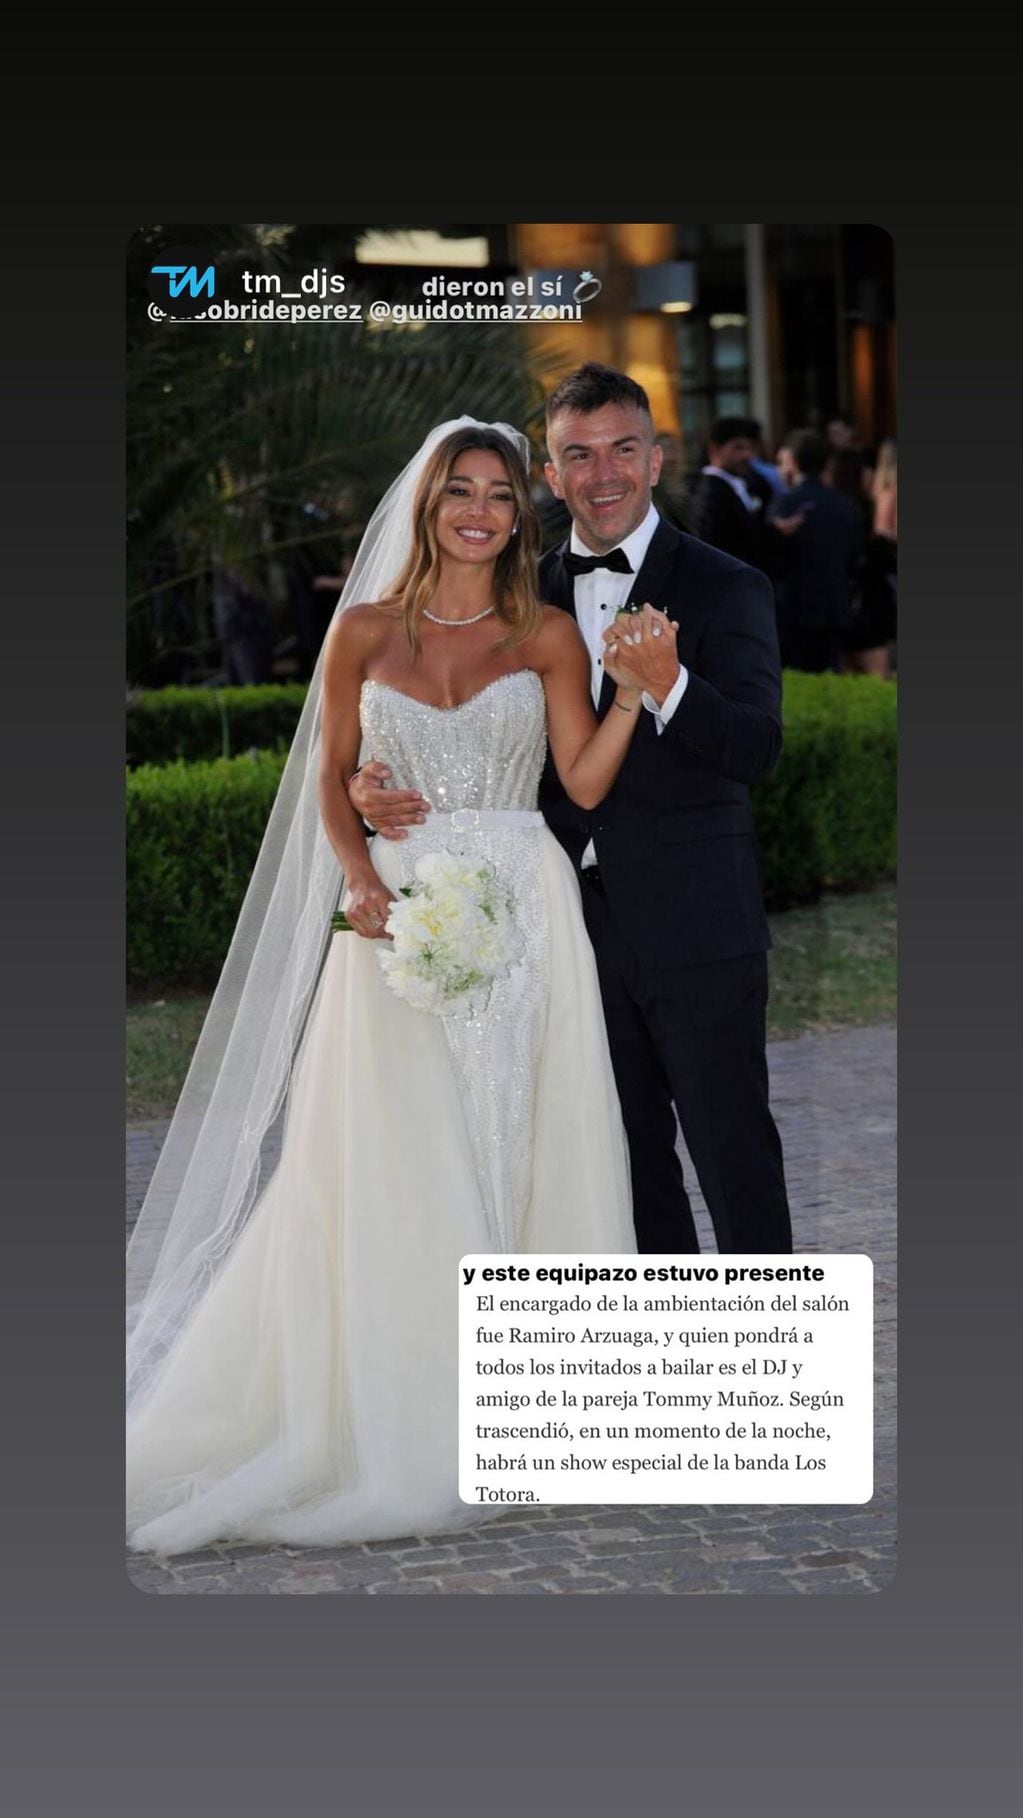 El casamiento de Sol Pérez y Guido Mazzoni